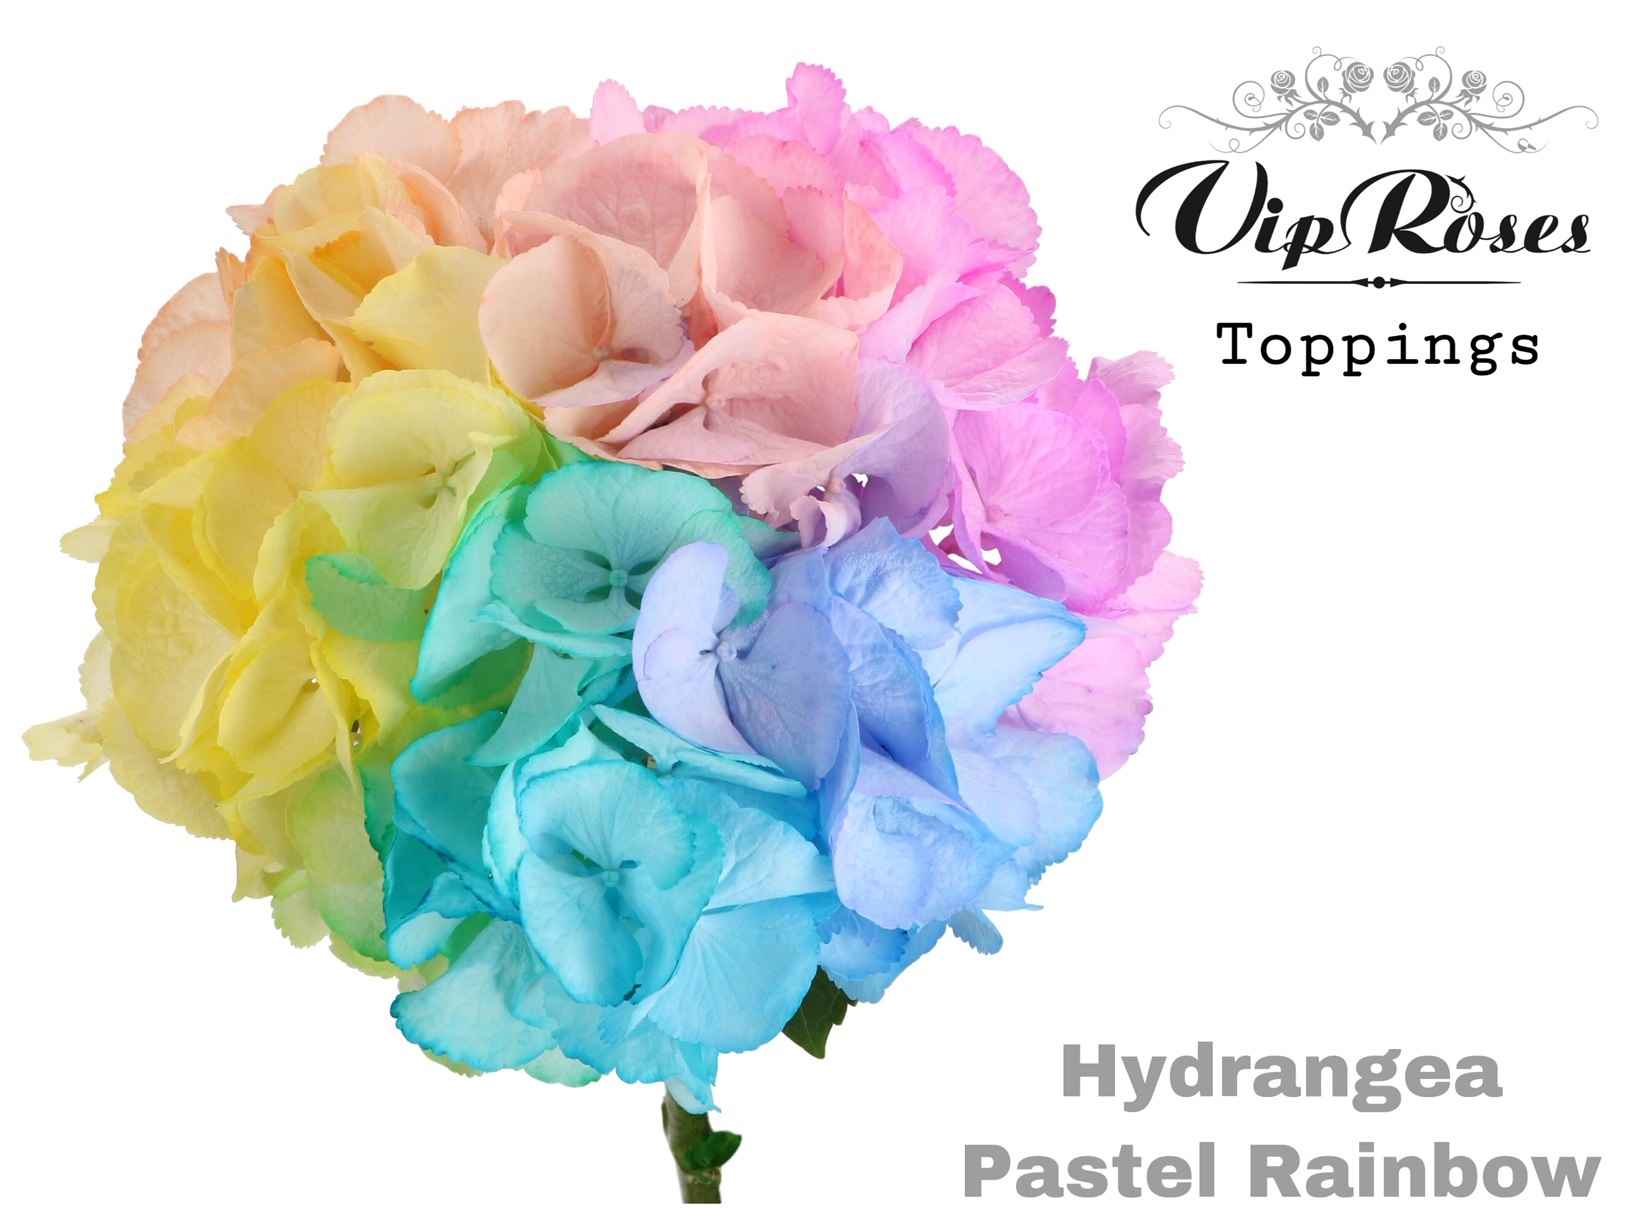 Срезанные цветы оптом Hydrangea paint rainbow pastel от 10шт из Голландии с доставкой по России